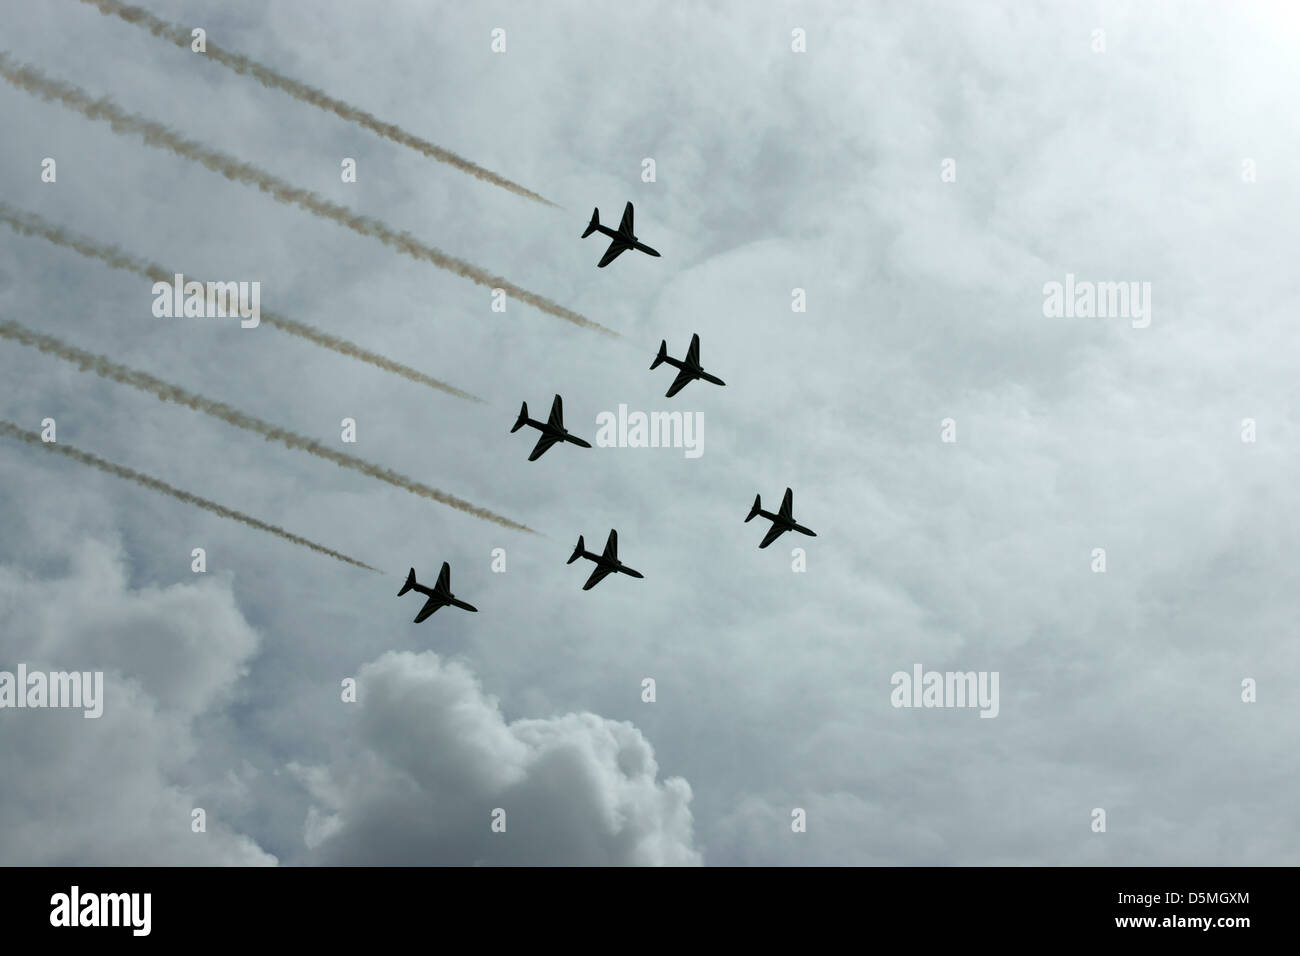 Piani airshow nuvole di fumo nimbus volare basso fast Foto Stock